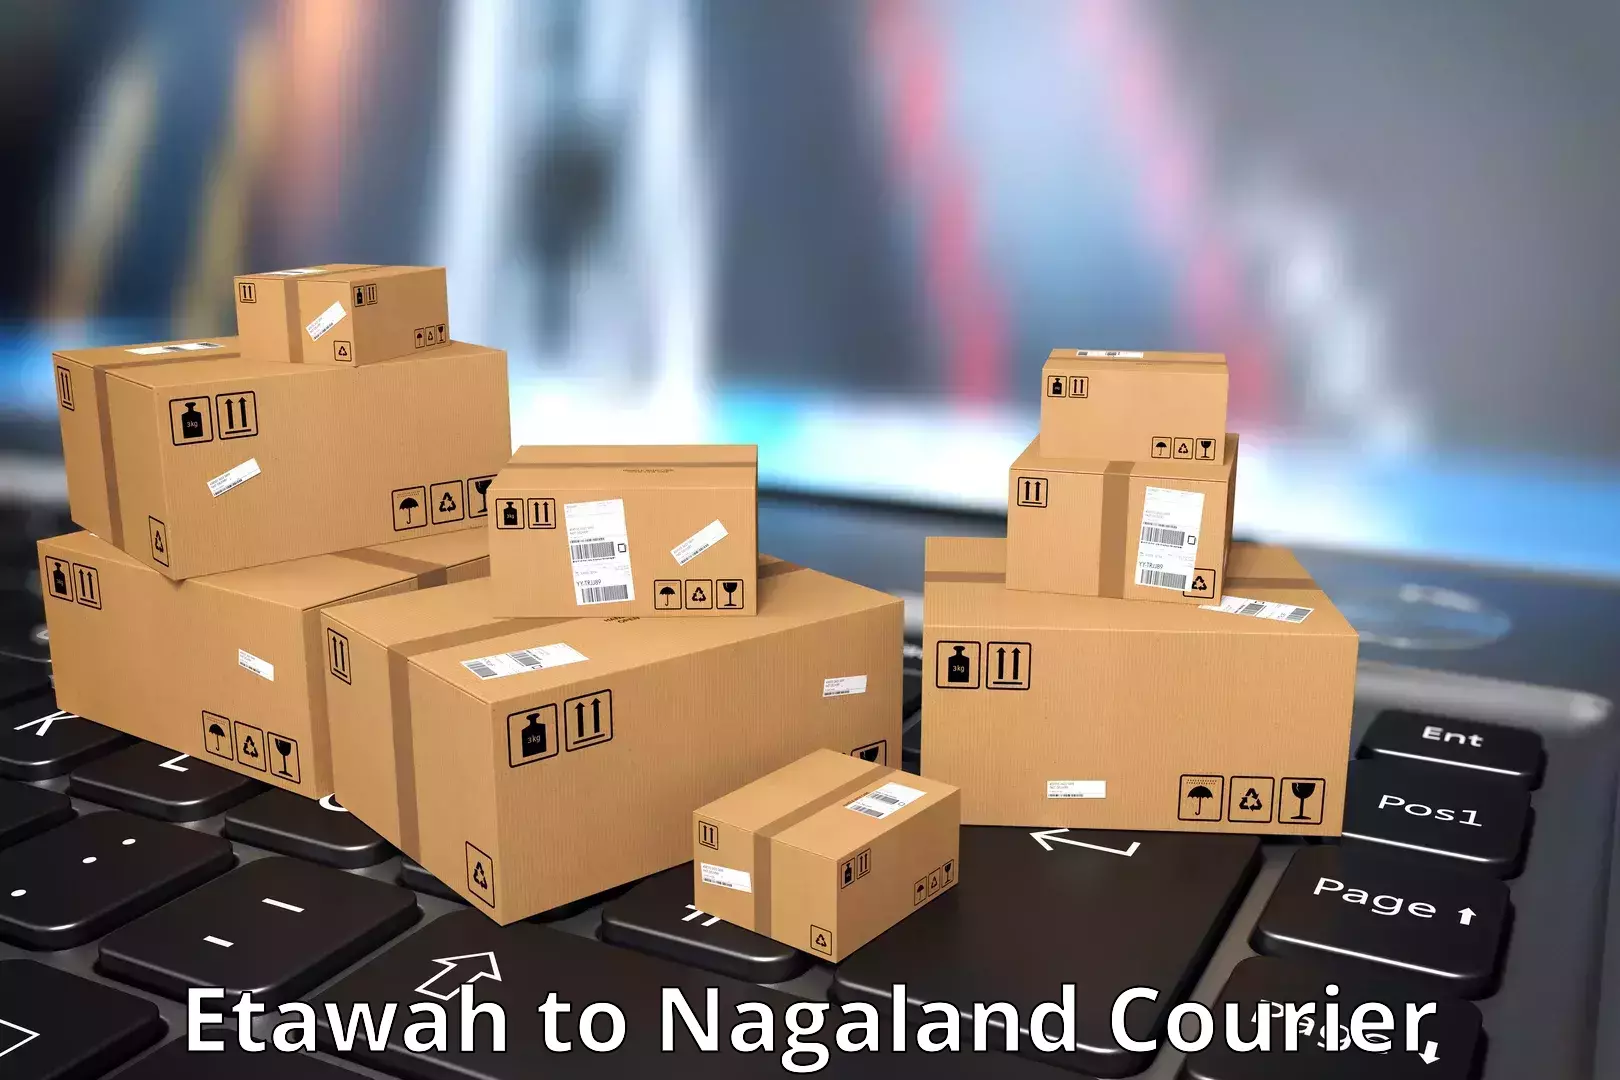 International parcel service Etawah to Kohima